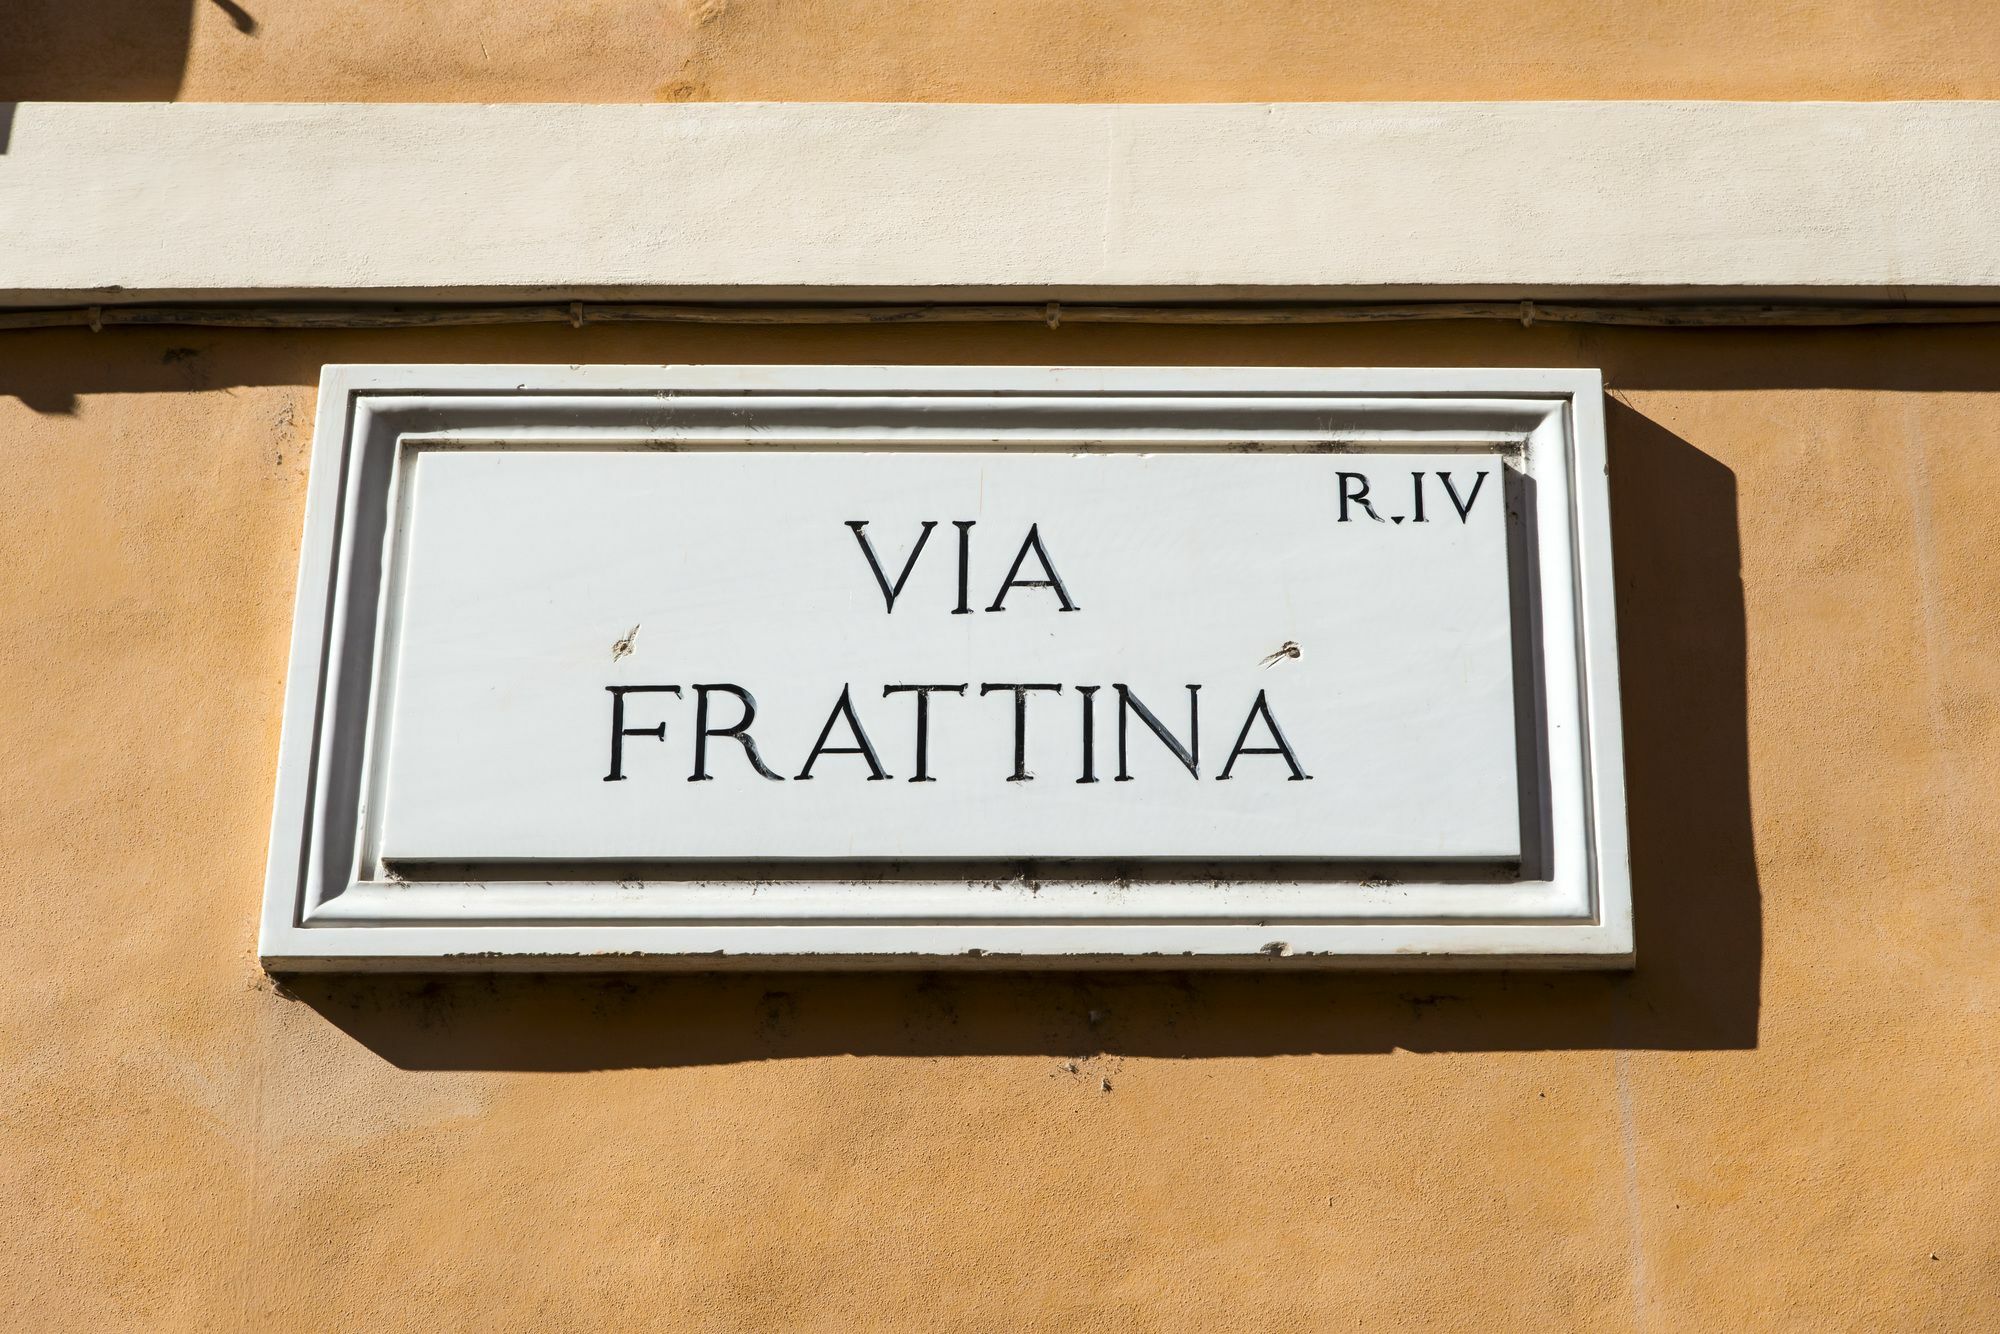 Rome Frattina27 Hotel Esterno foto